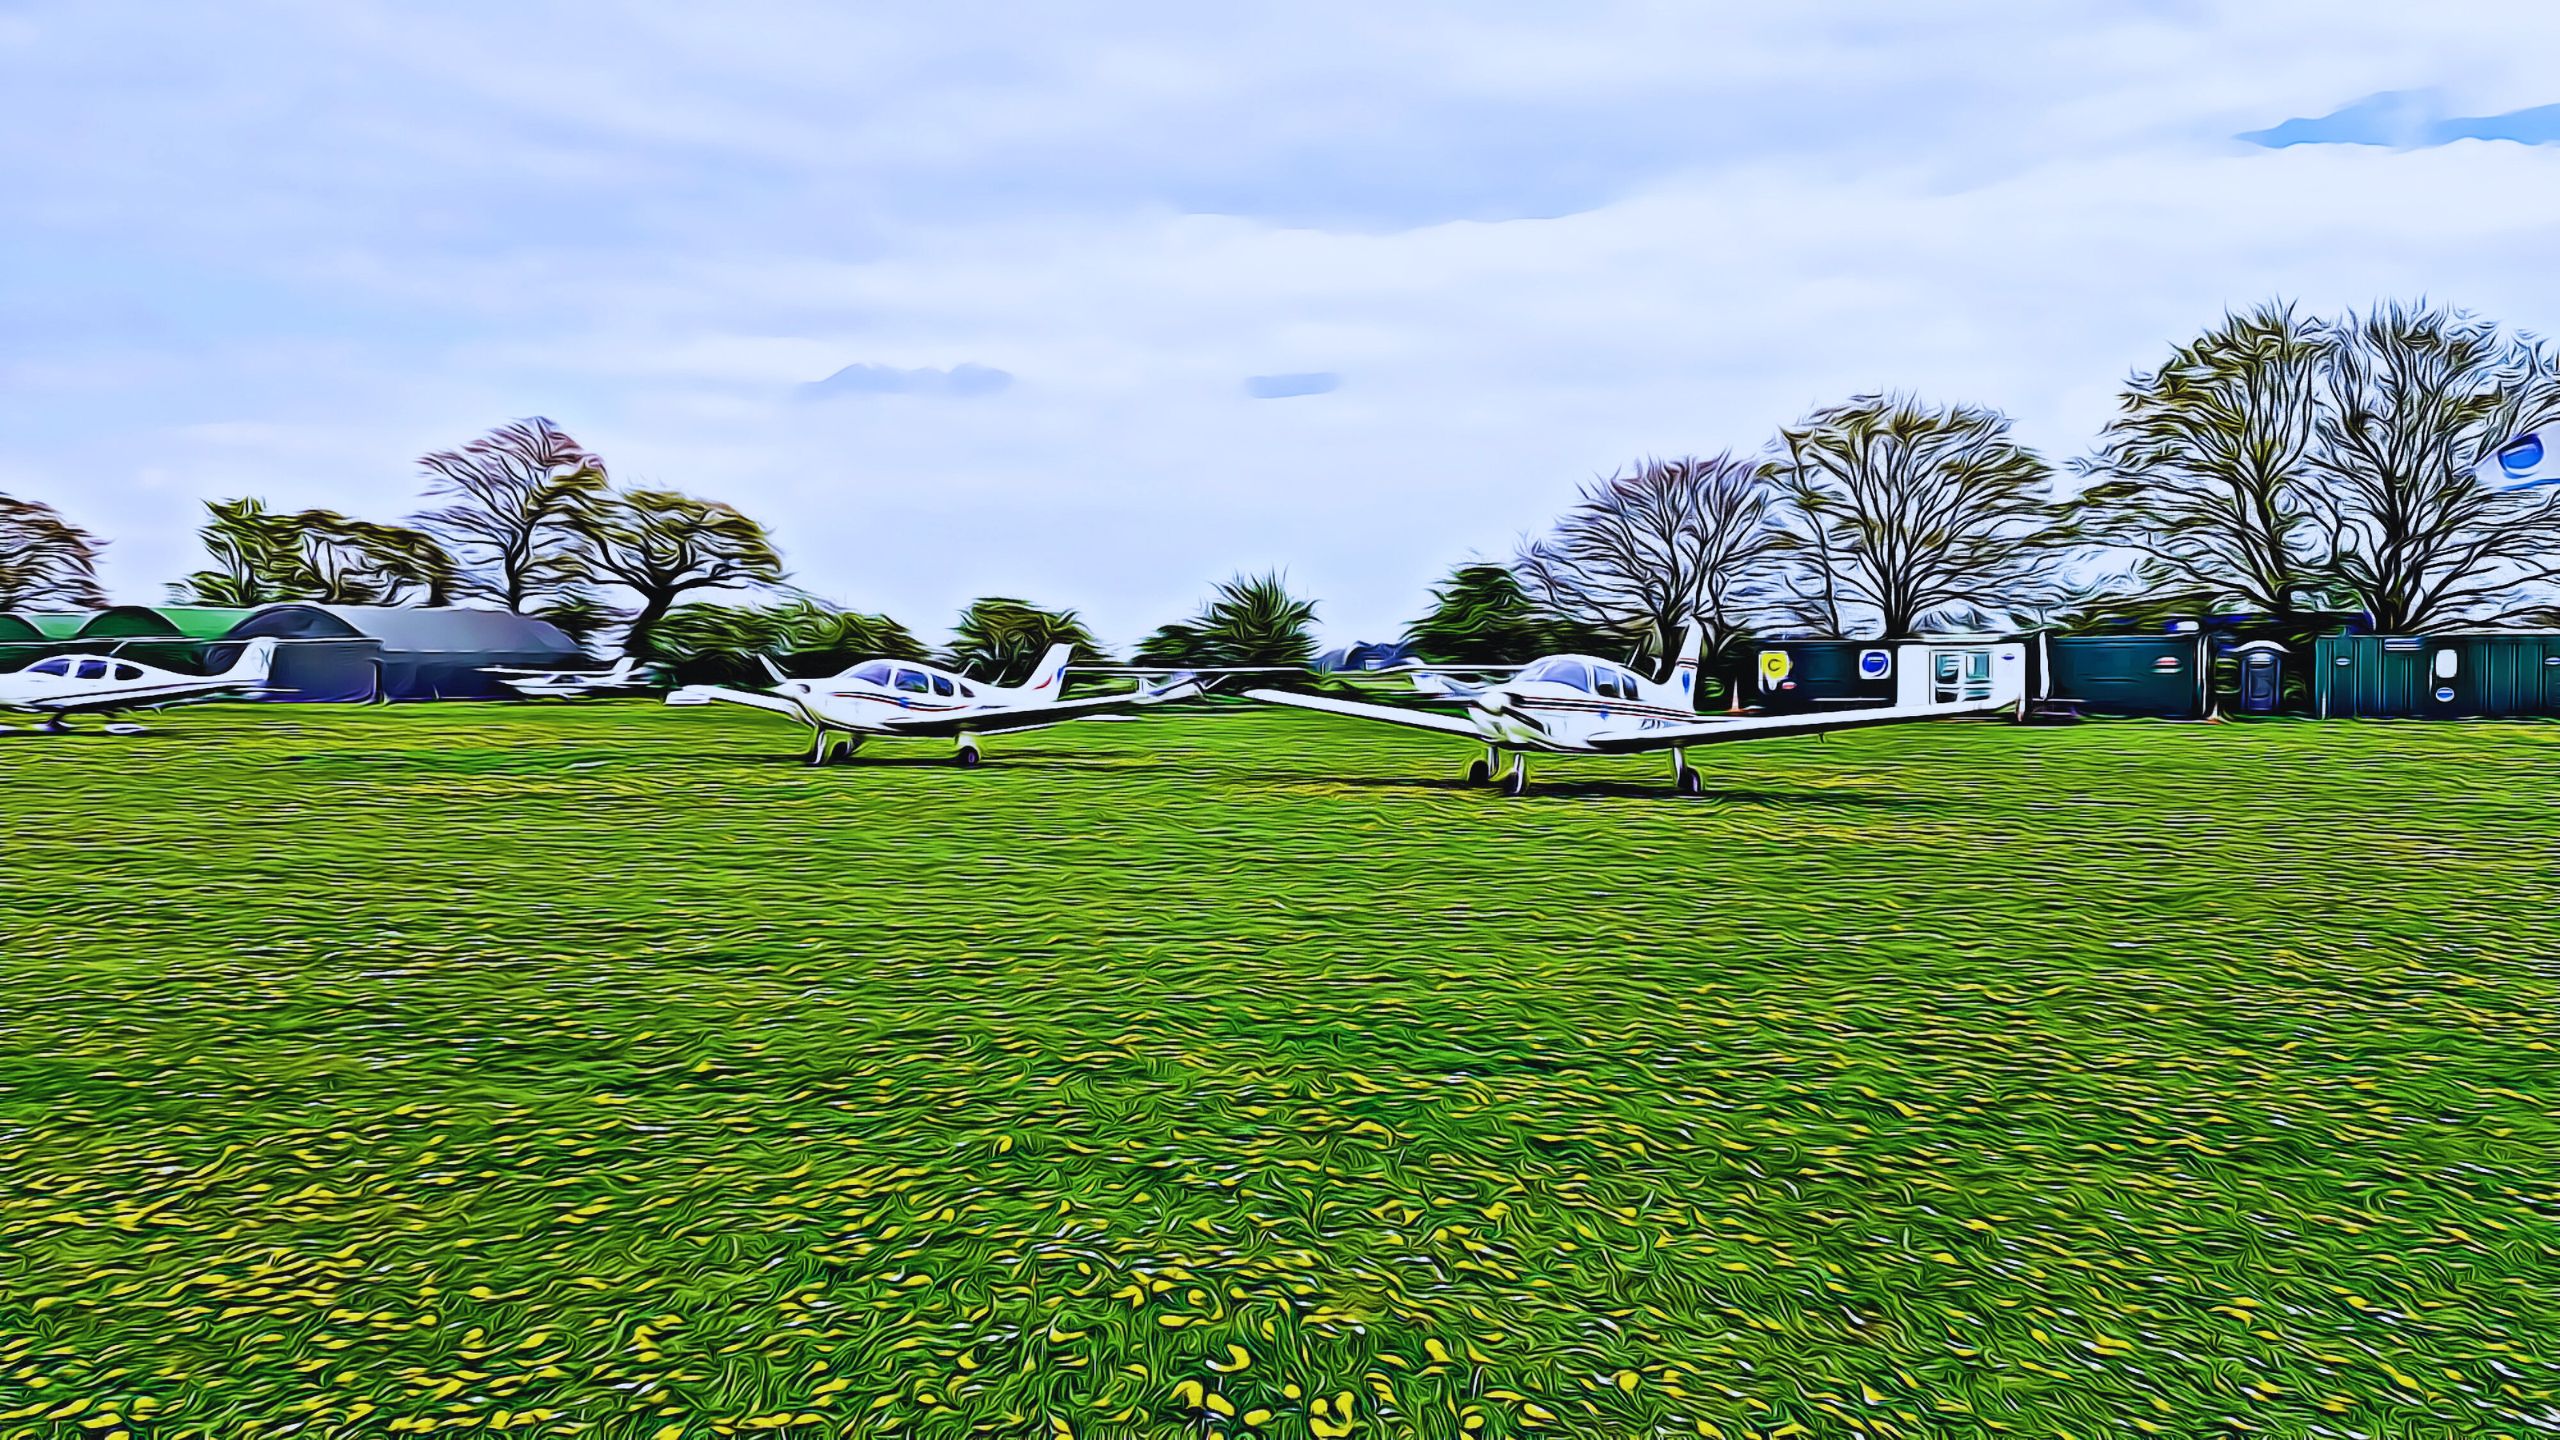 Rougham Airfield